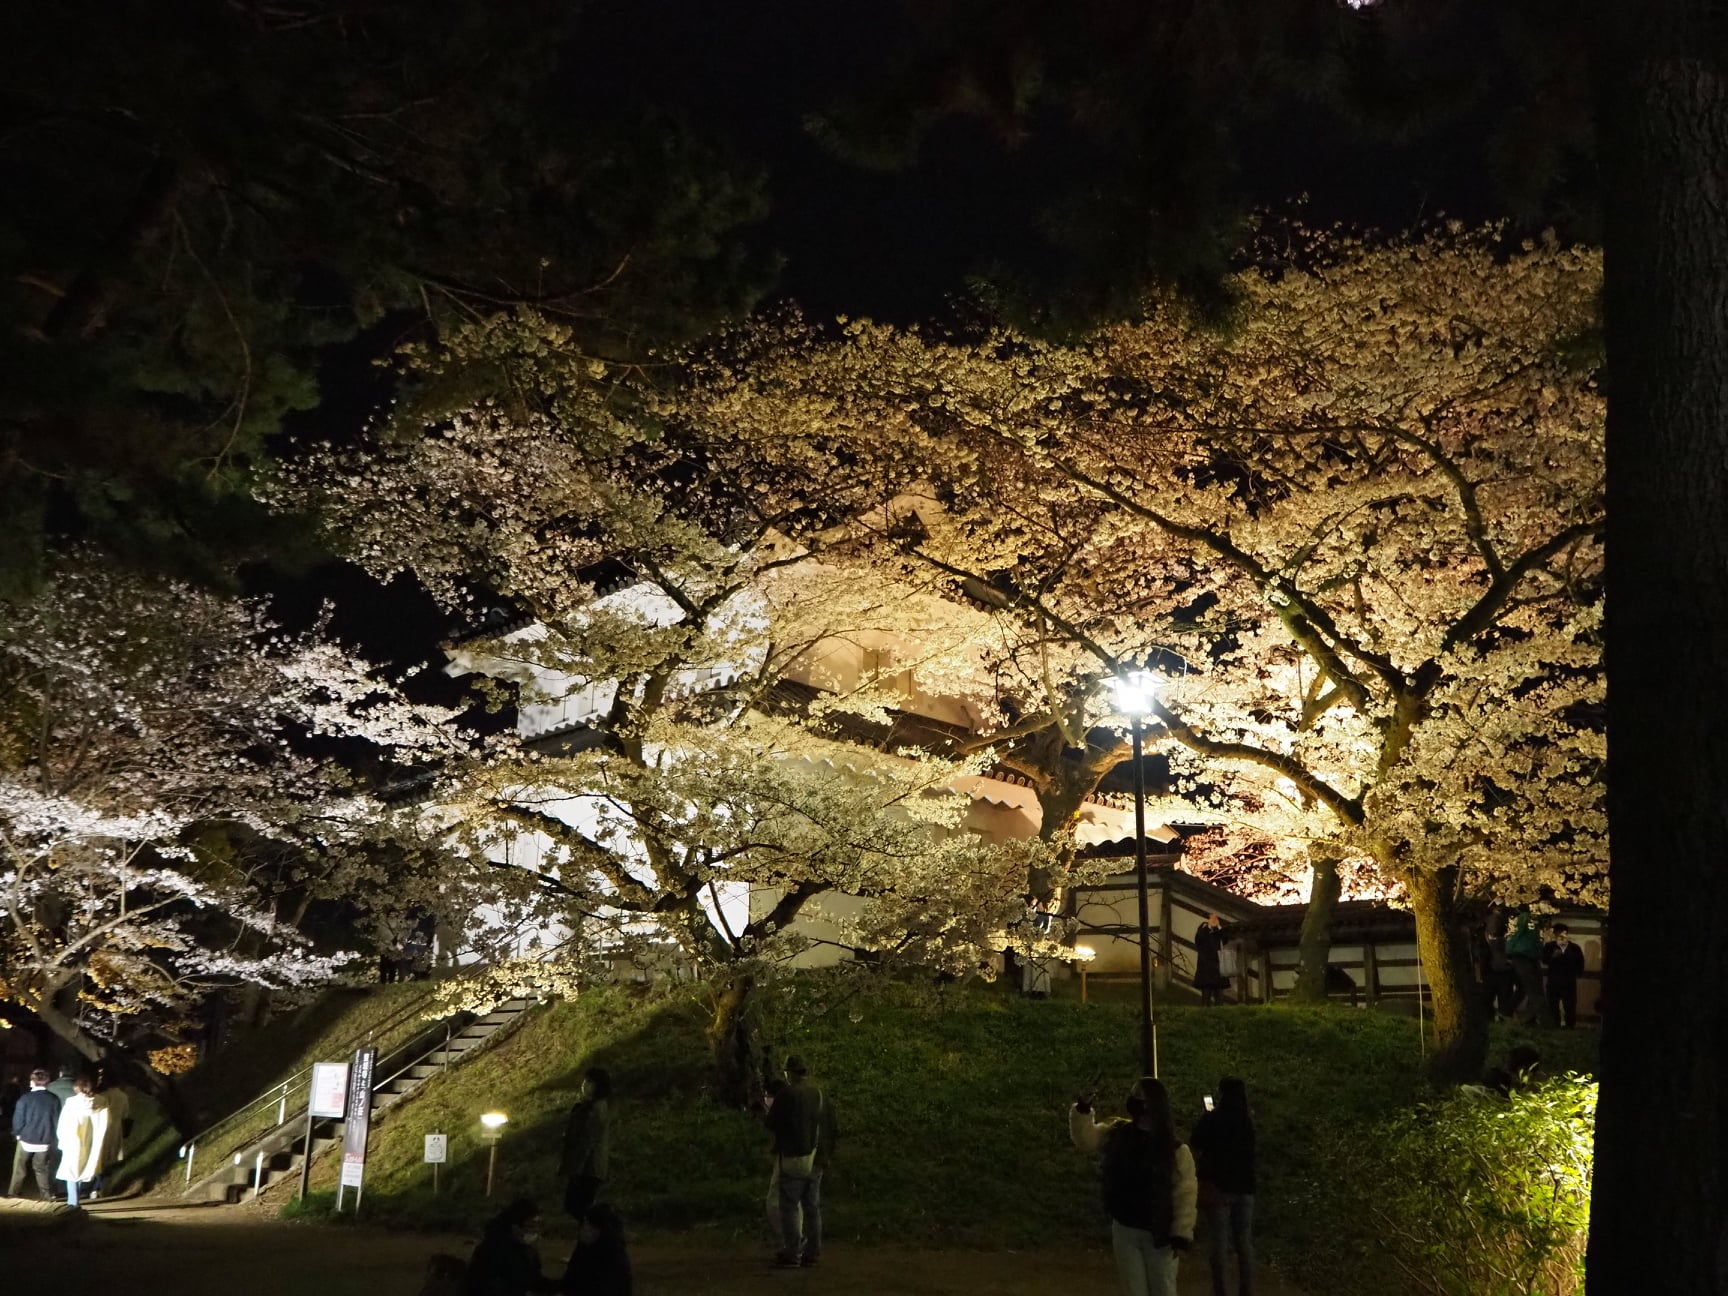 土浦の桜をお楽しみください!page-visual 土浦の桜をお楽しみください!ビジュアル